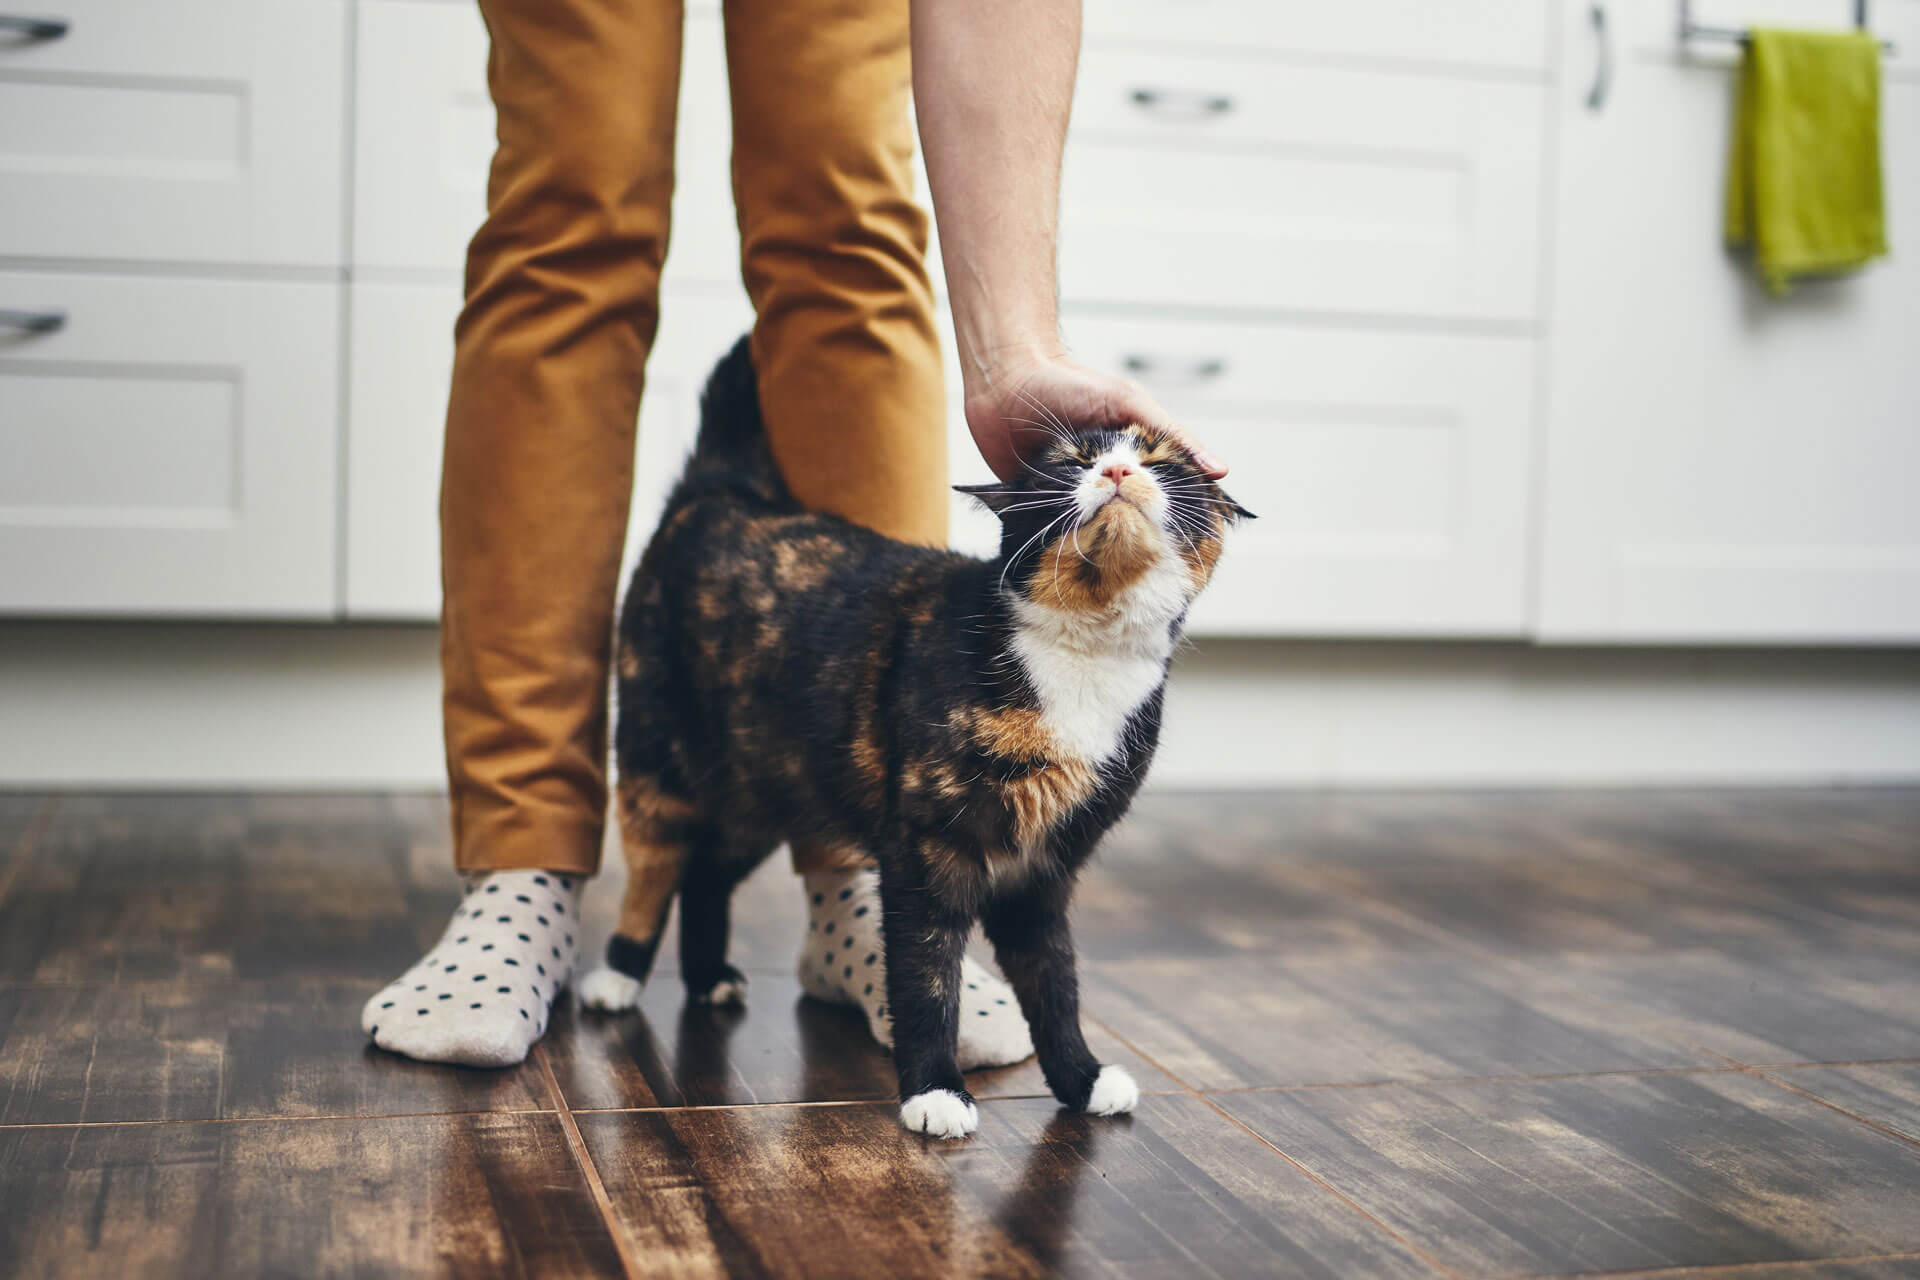 kotka w rui — kot calico ocierający się o nogi człowieka w domu